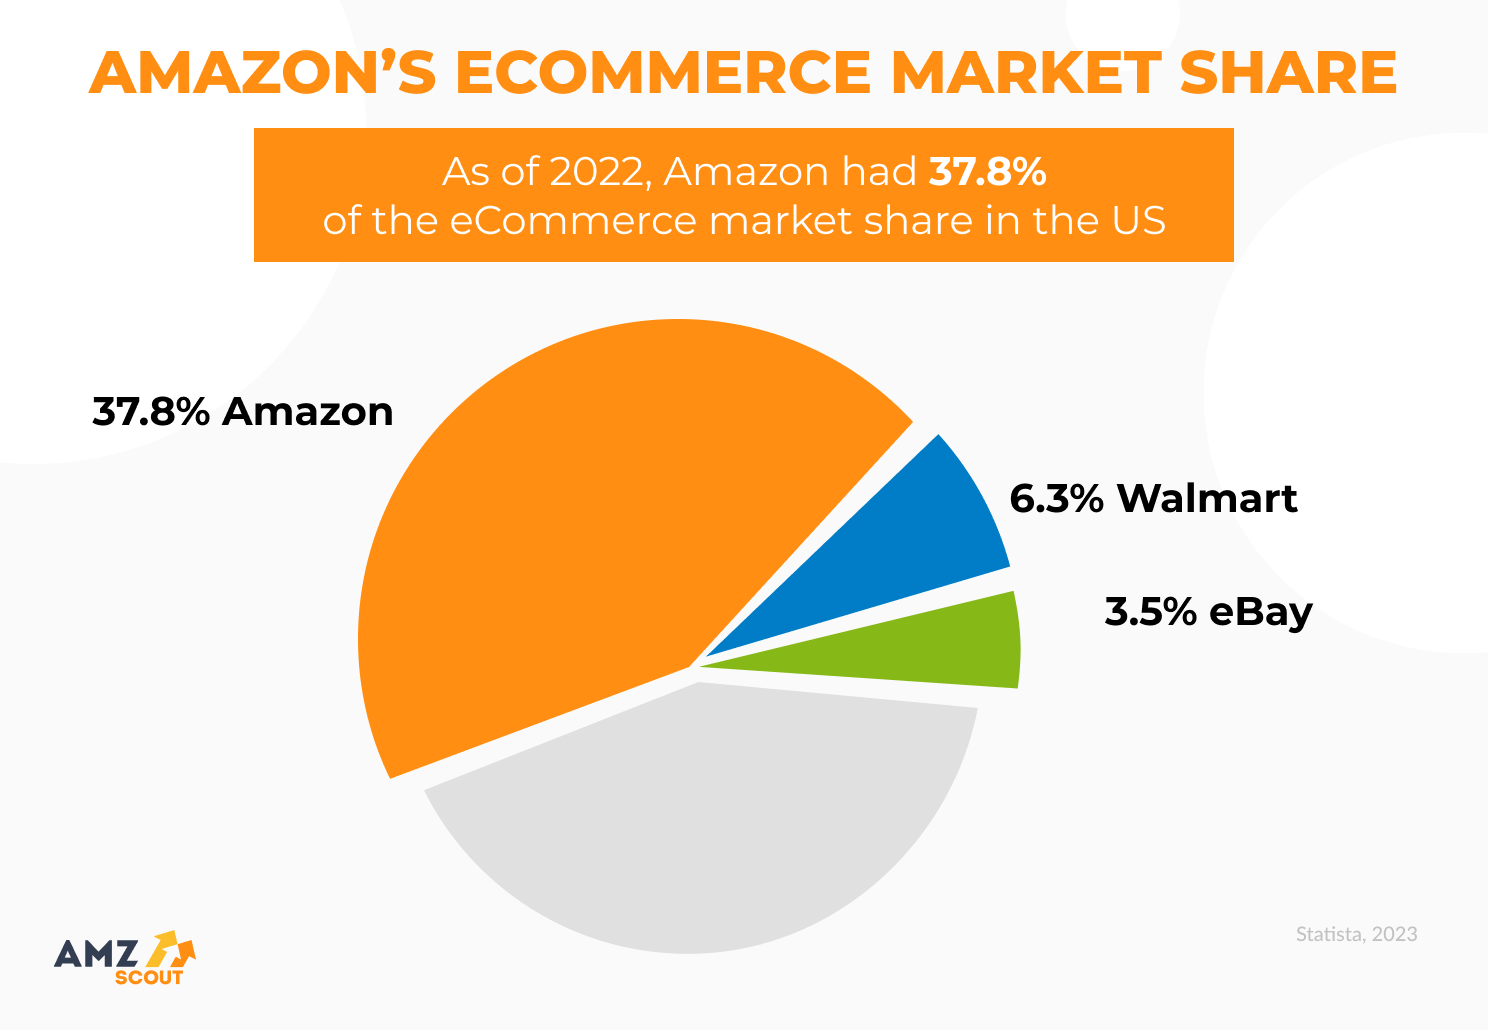 Amazon's eCommerce market share